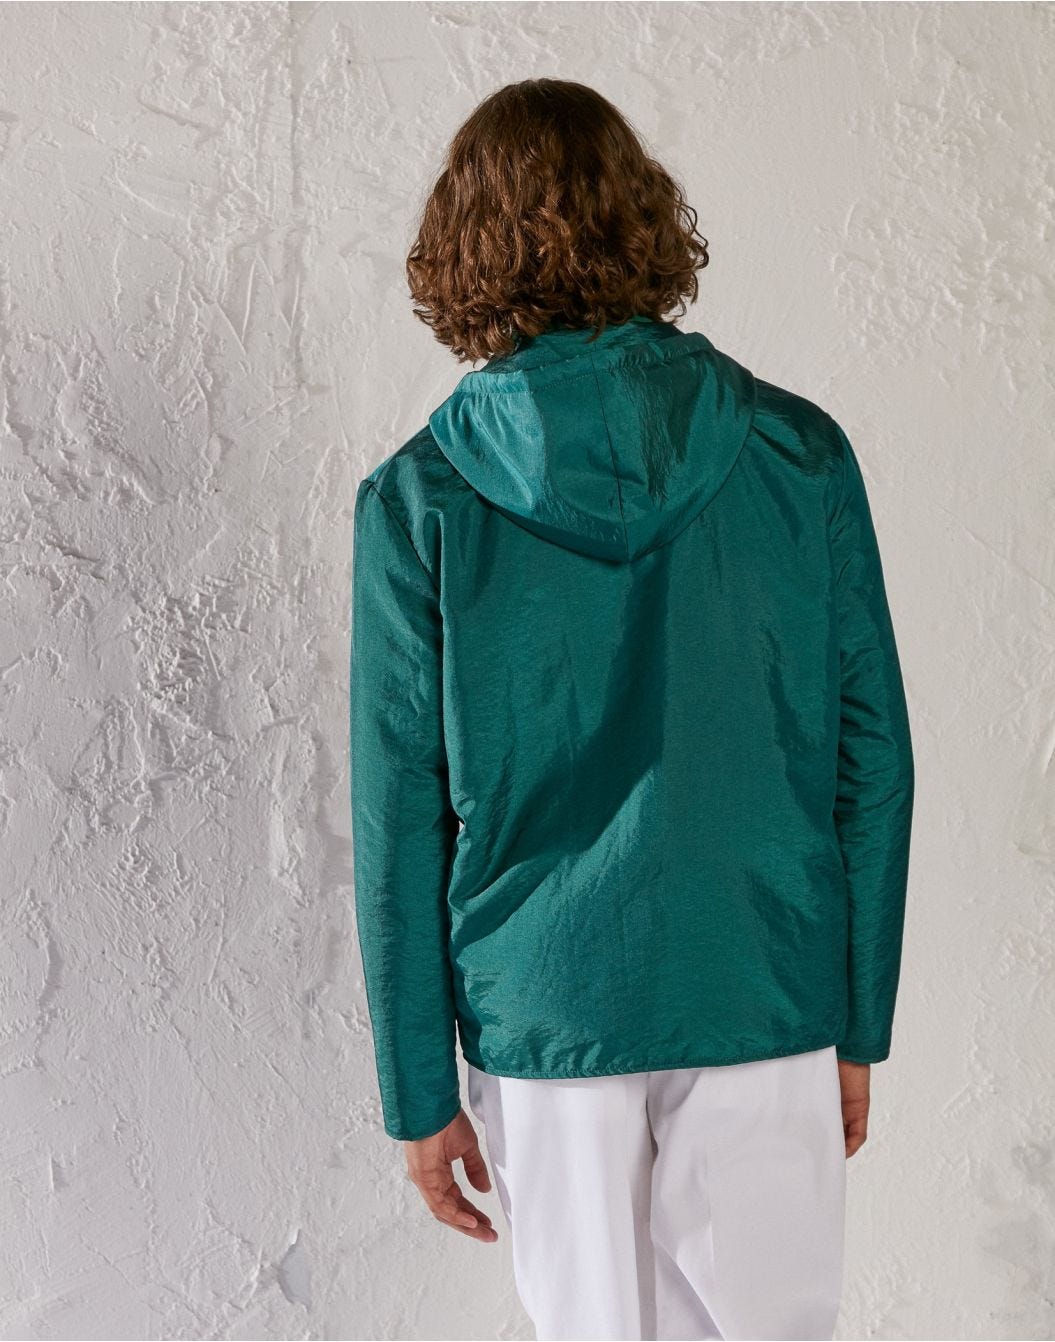 Green hooded jacket - Luigi Lardini capsule